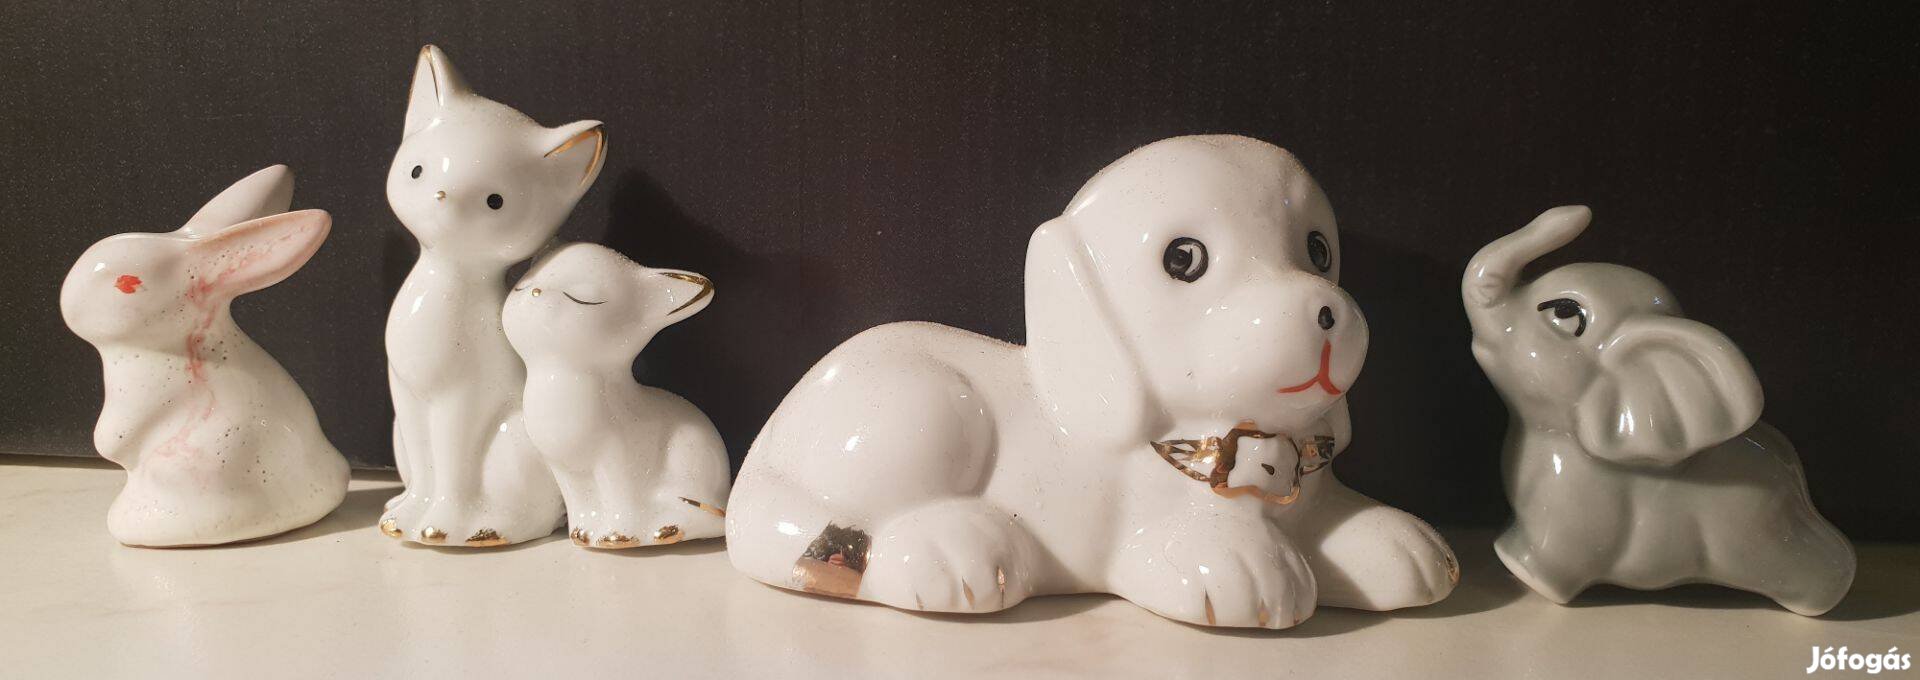 Állatkás porcelán figurák - nippek 1000 ft darabárban